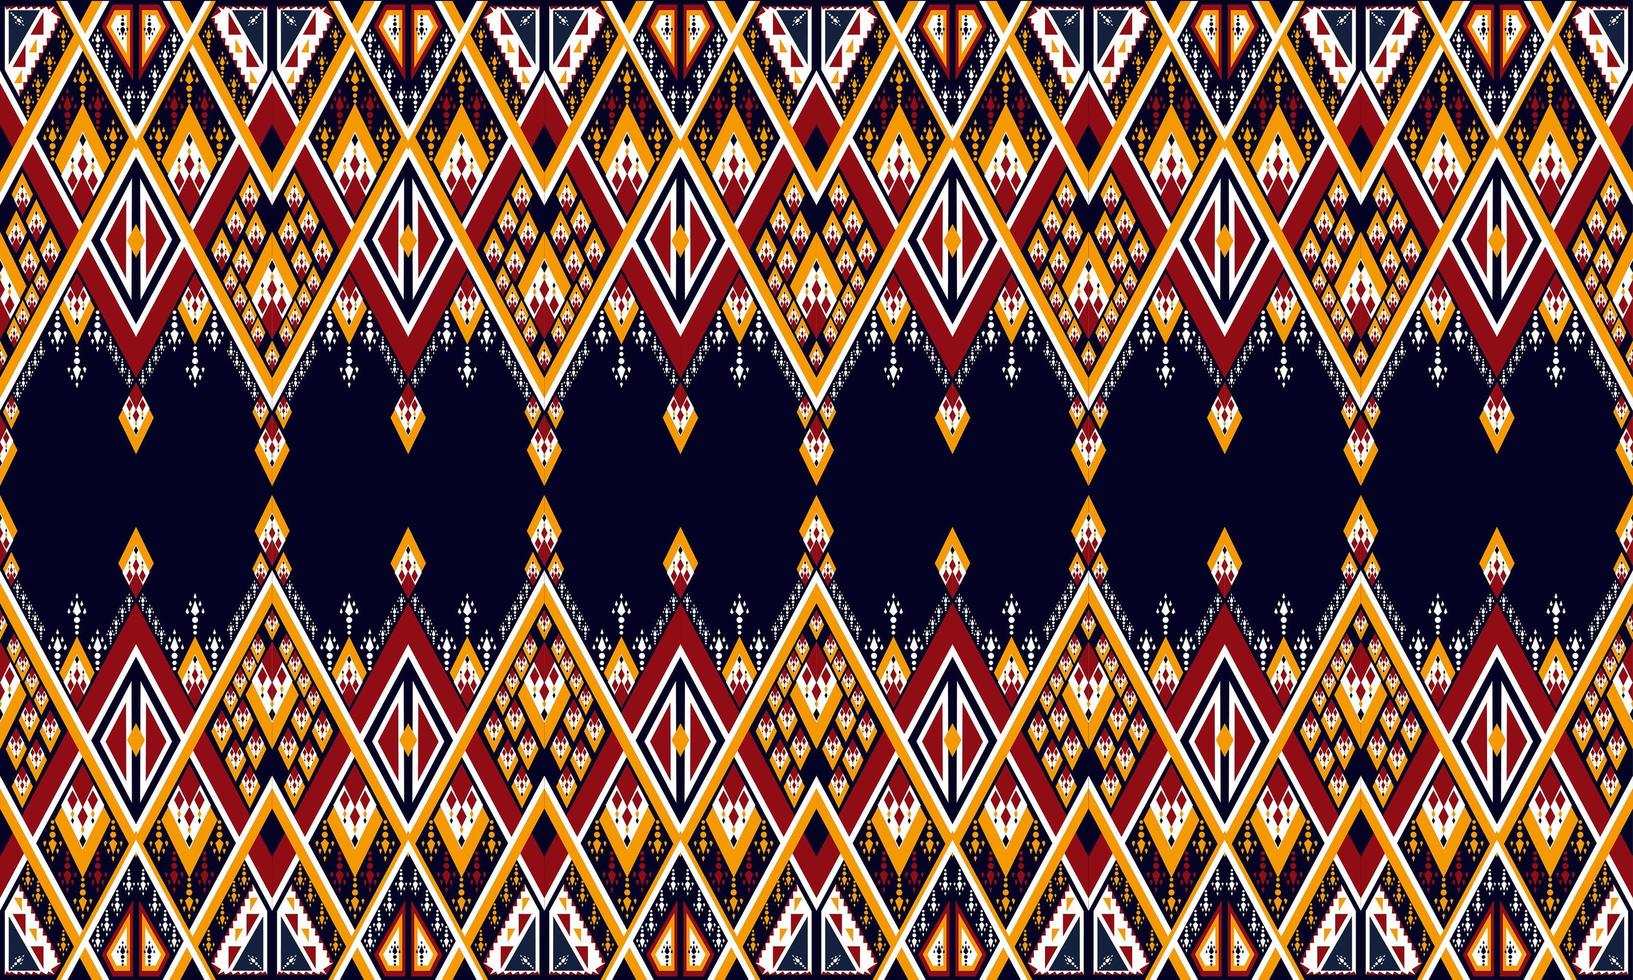 bordado de patrón étnico geométrico. alfombra, papel tapiz, ropa, envoltura, batik, tela, estilo de bordado de ilustración vectorial. vector